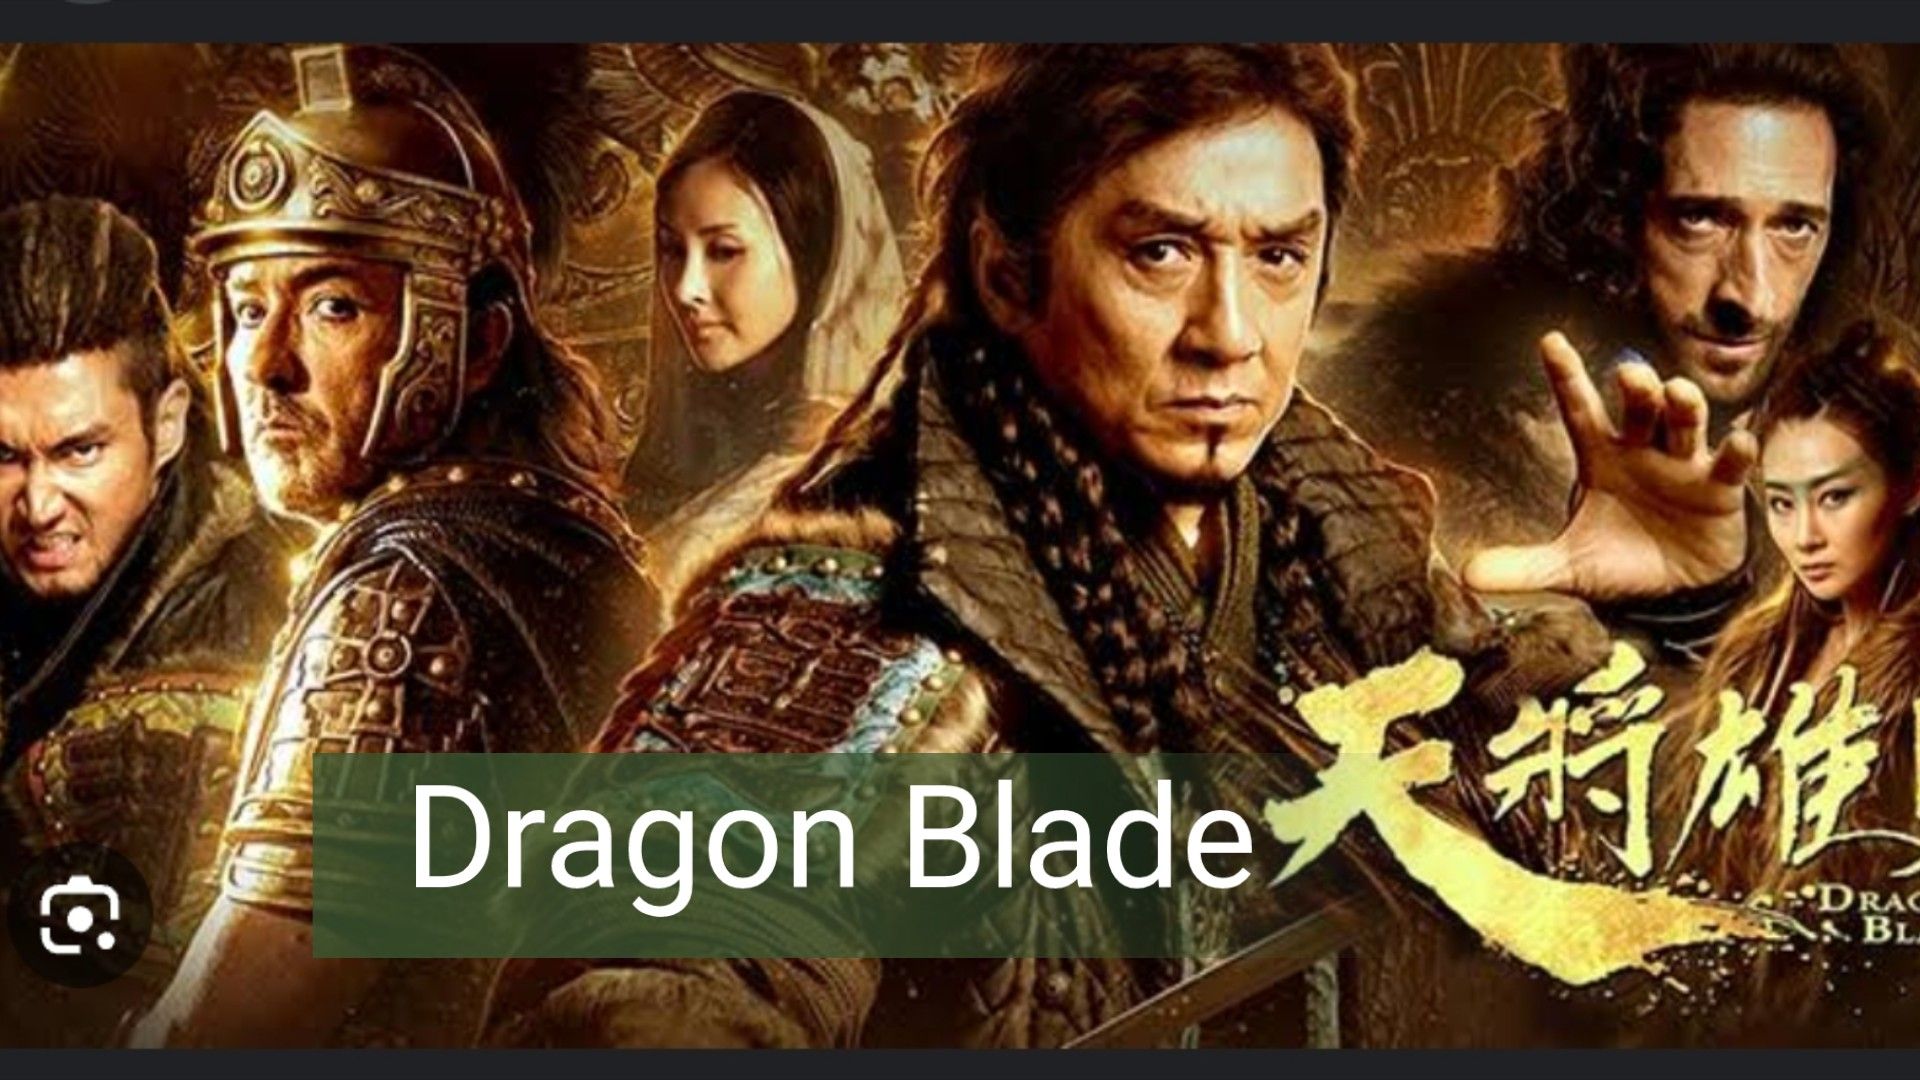 Dragon Blade full movie English dub - BiliBili